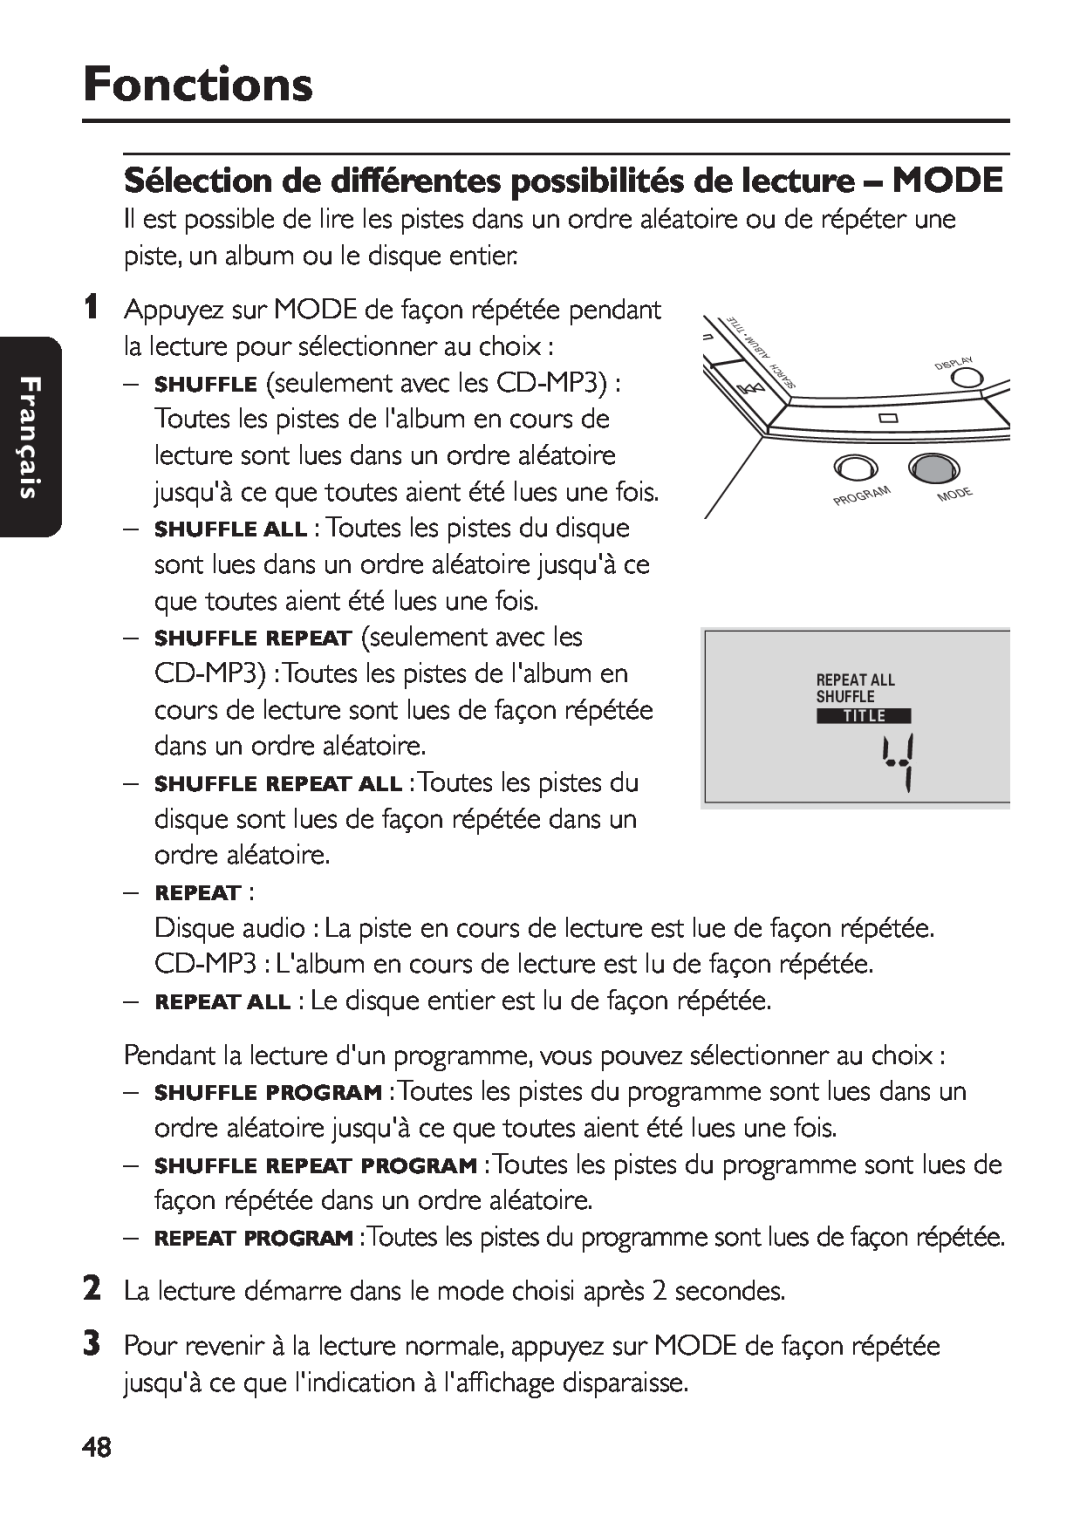 Philips EXP 501/00 manual Sélection de différentes possibilités de lecture - MODE, Fonctions, Français 